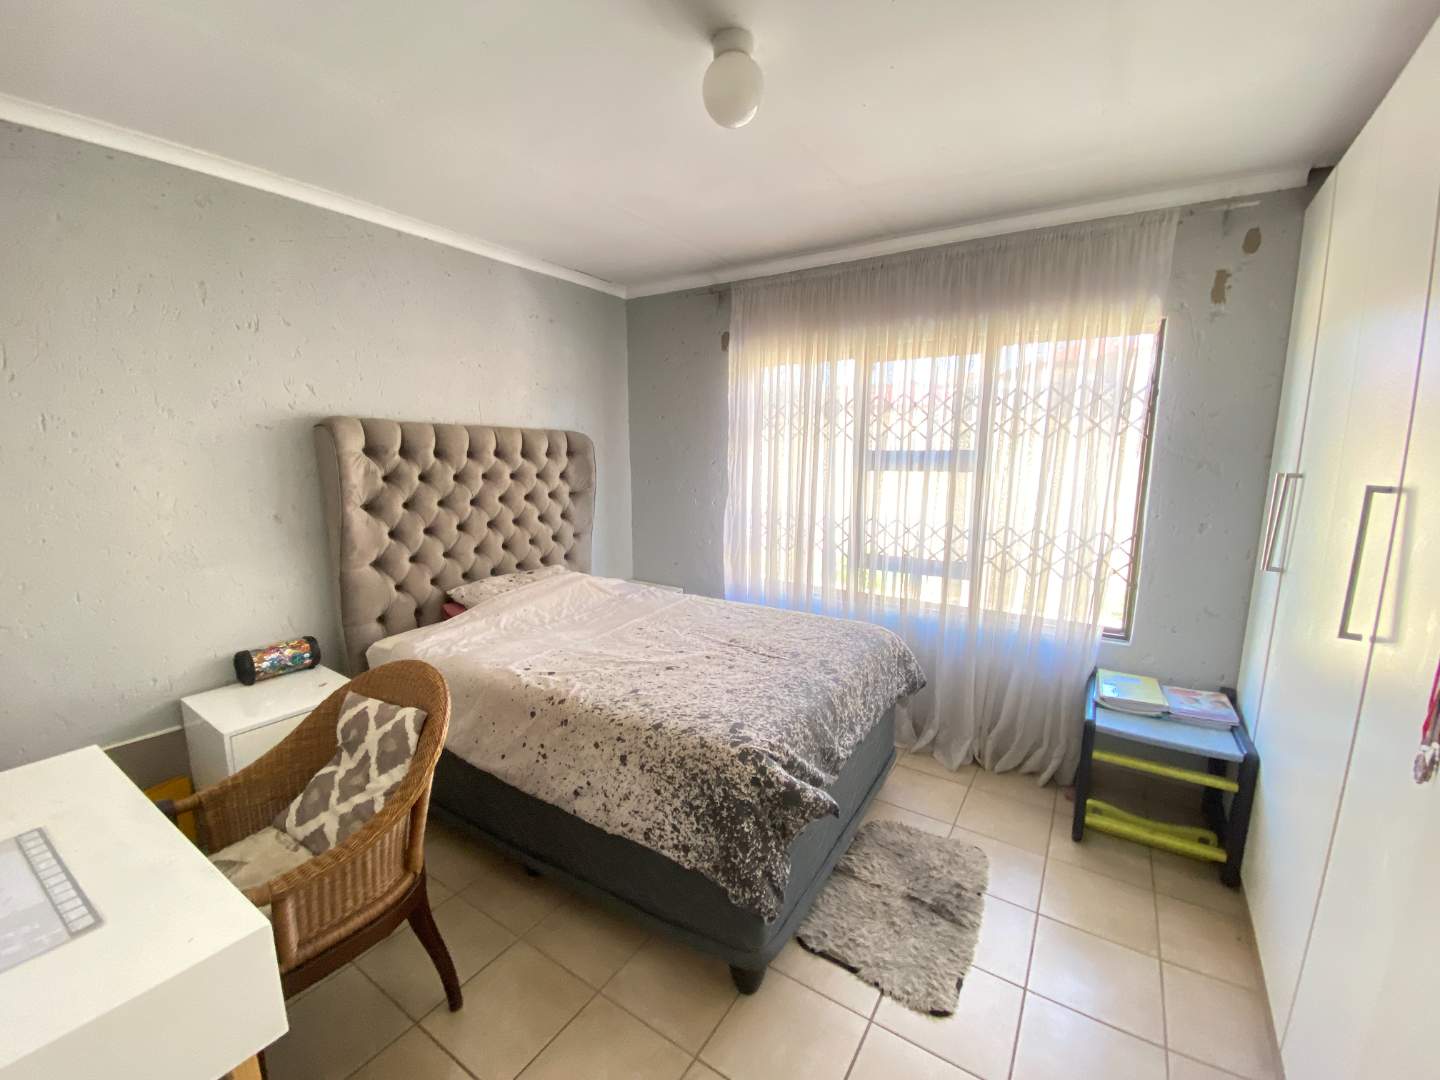 5 Bedroom Property for Sale in Liefde en Vrede Gauteng